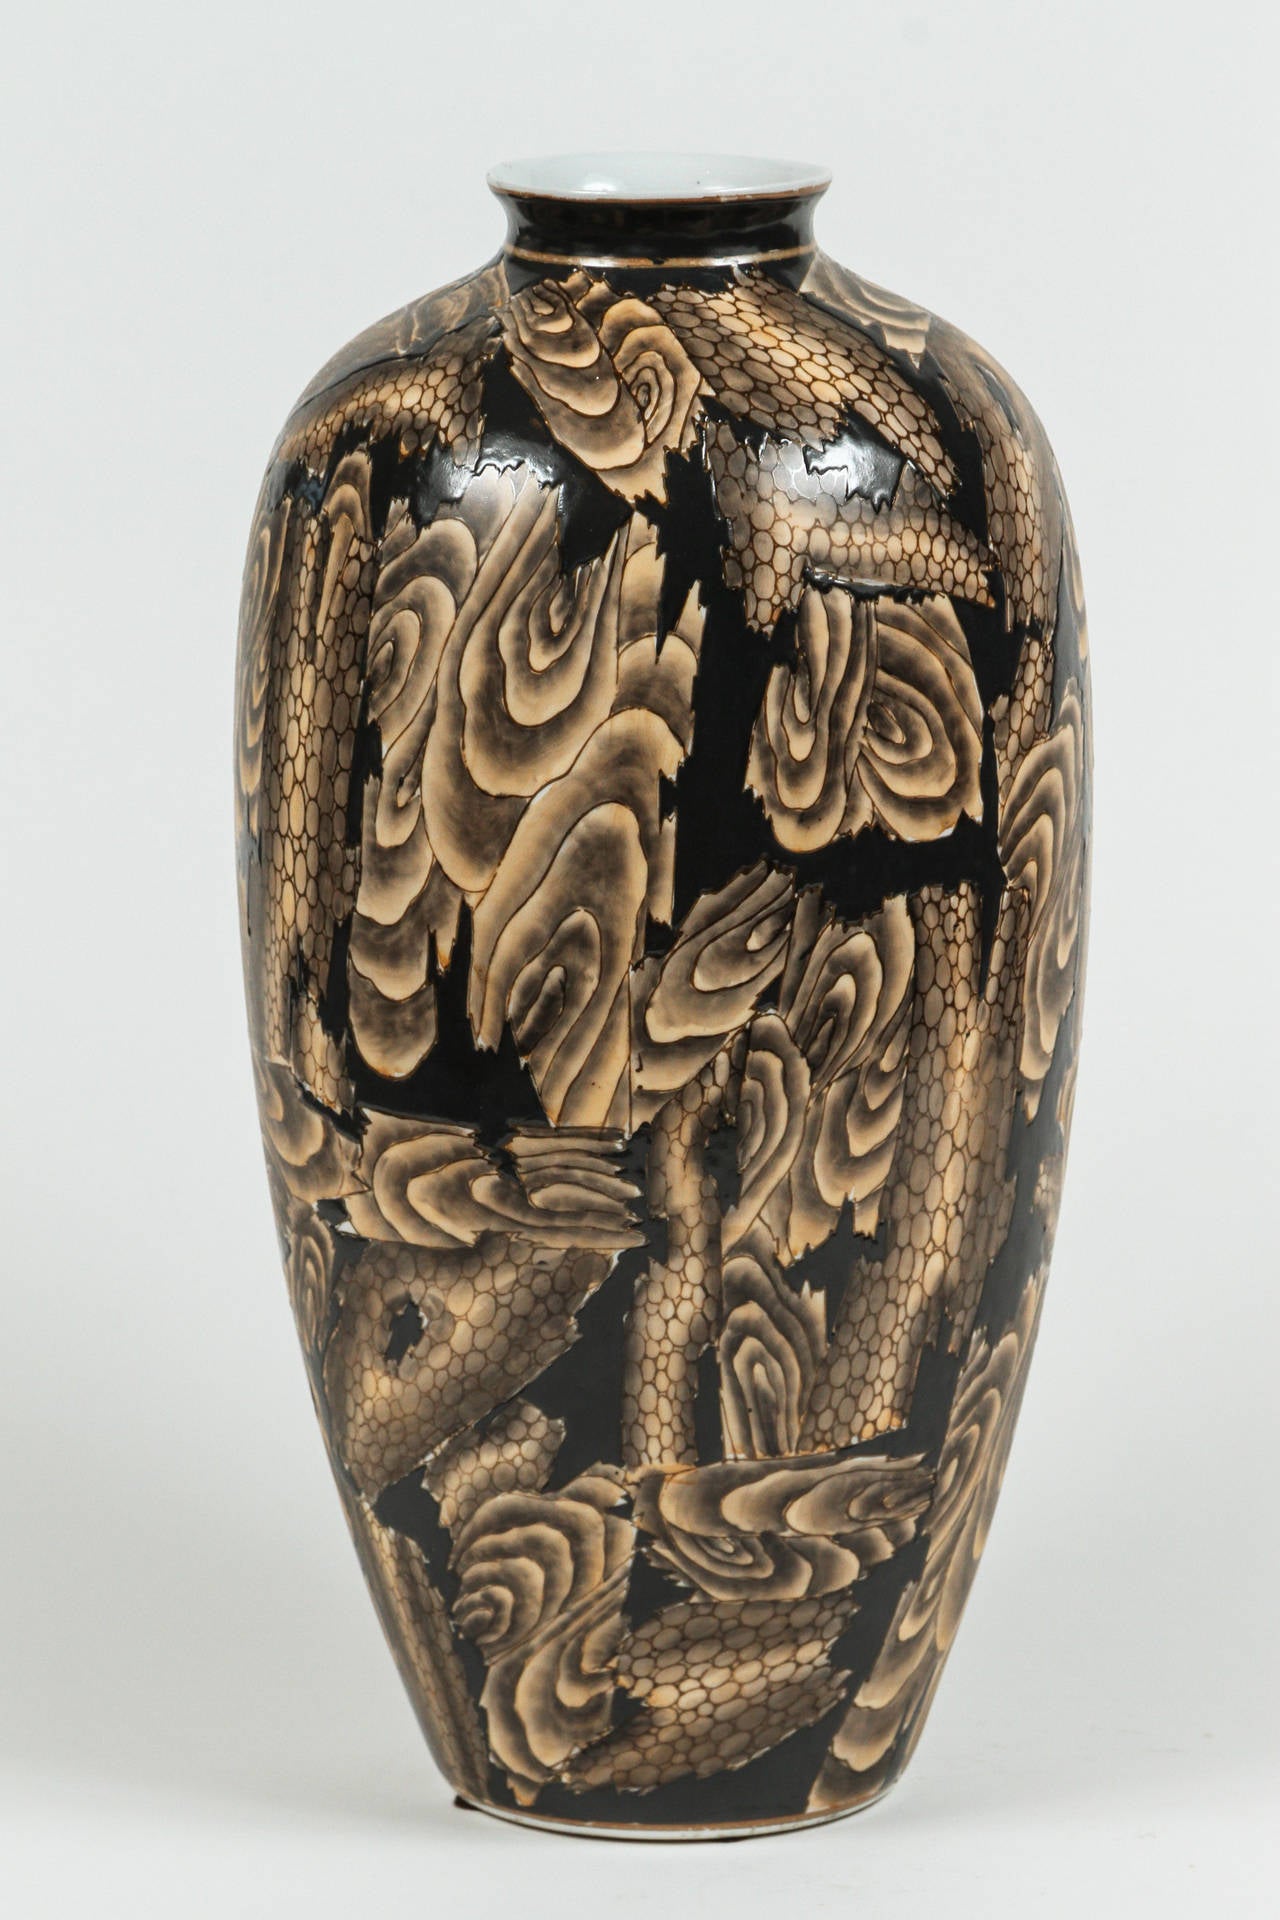 Sehr einzigartige hohe japanische Vase mit abstraktem Muster in verschiedenen Brauntönen. Die tiefbraune Glasur ist erhaben und verleiht der Vase eine wunderbare taktile Textur.